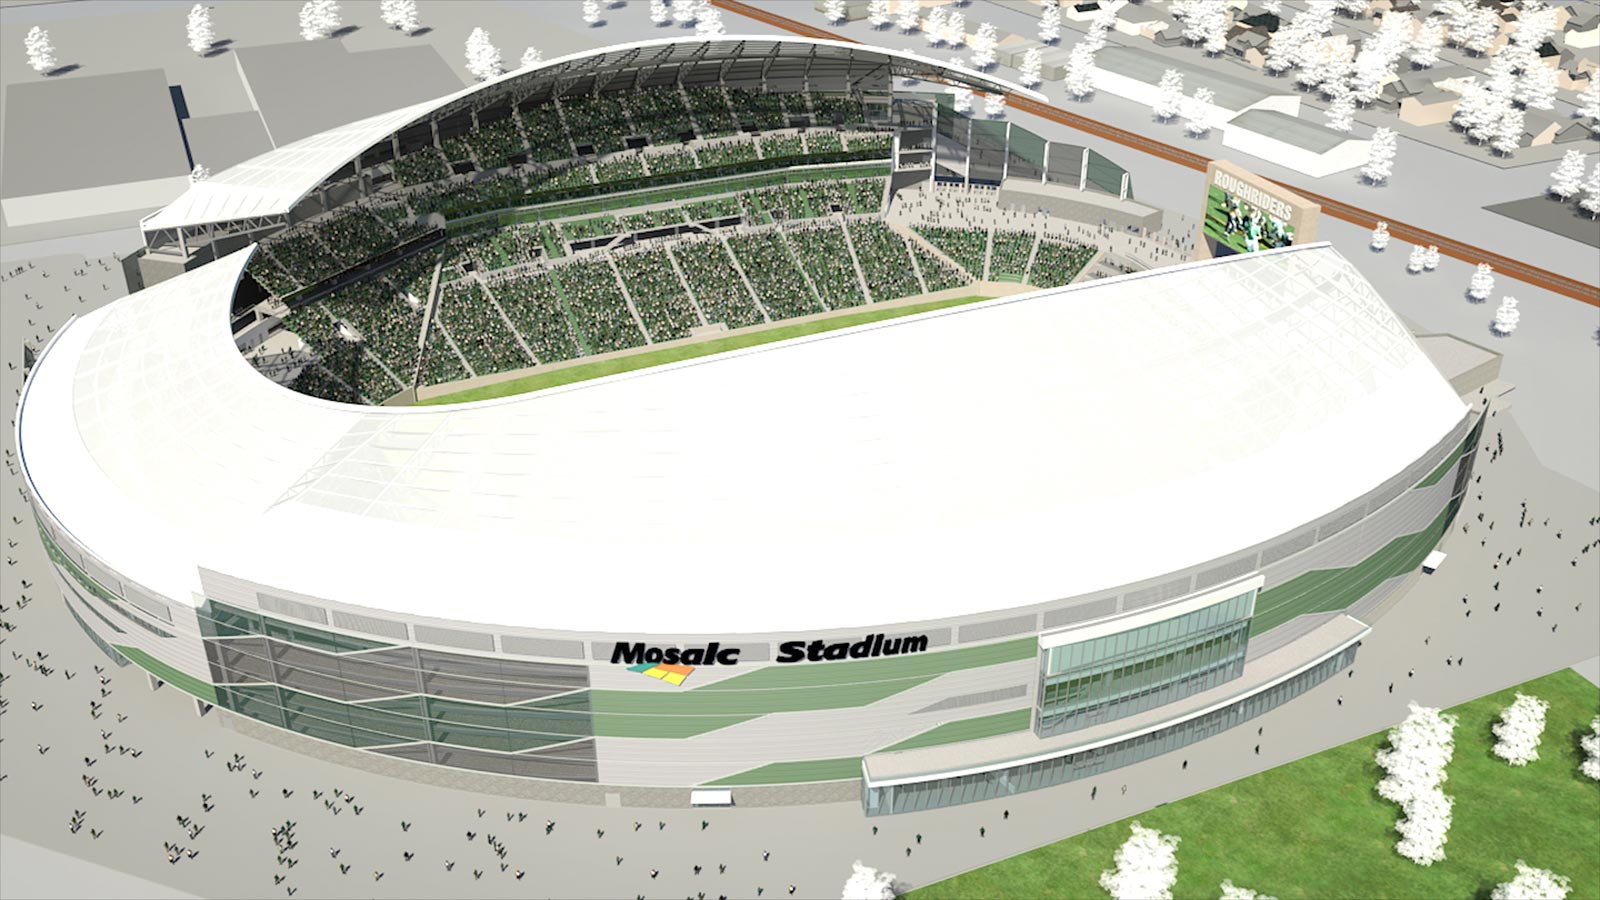 FabriTec PTFE Tensile Membrane Roof Design New Mosaic Stadium